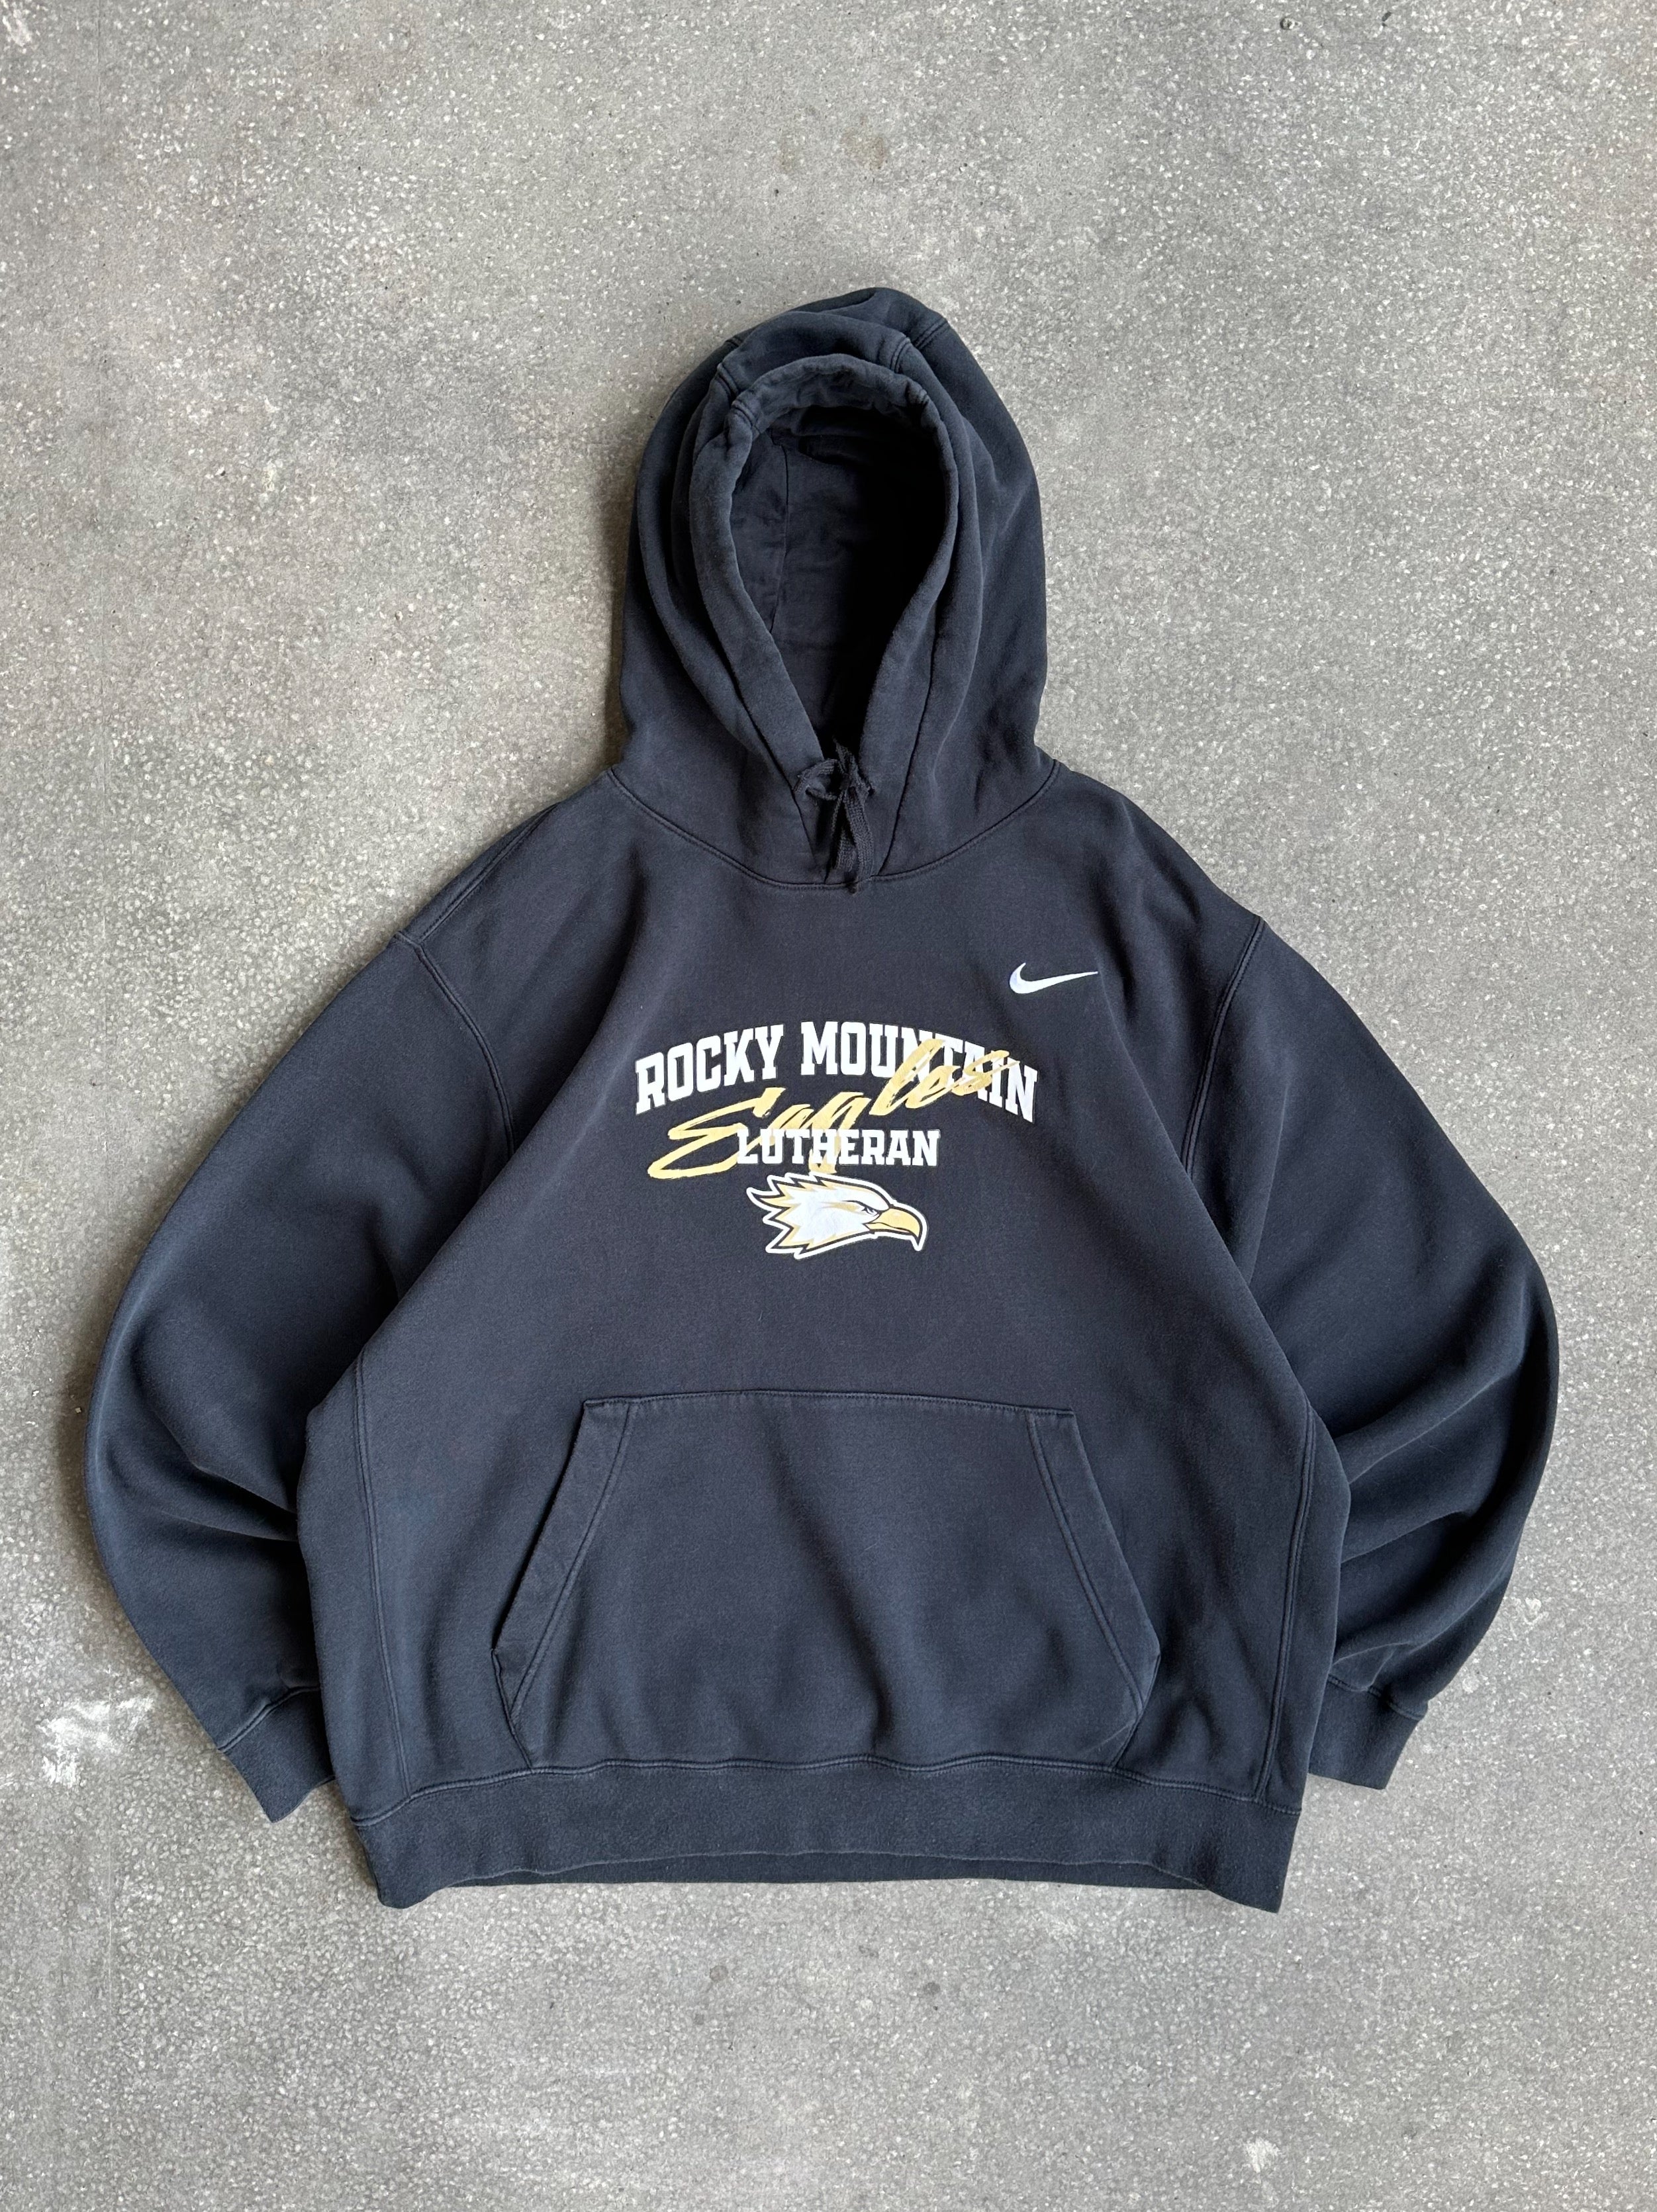 Vintage Nike Rocky Mountain Lutheran Hoodie - Large